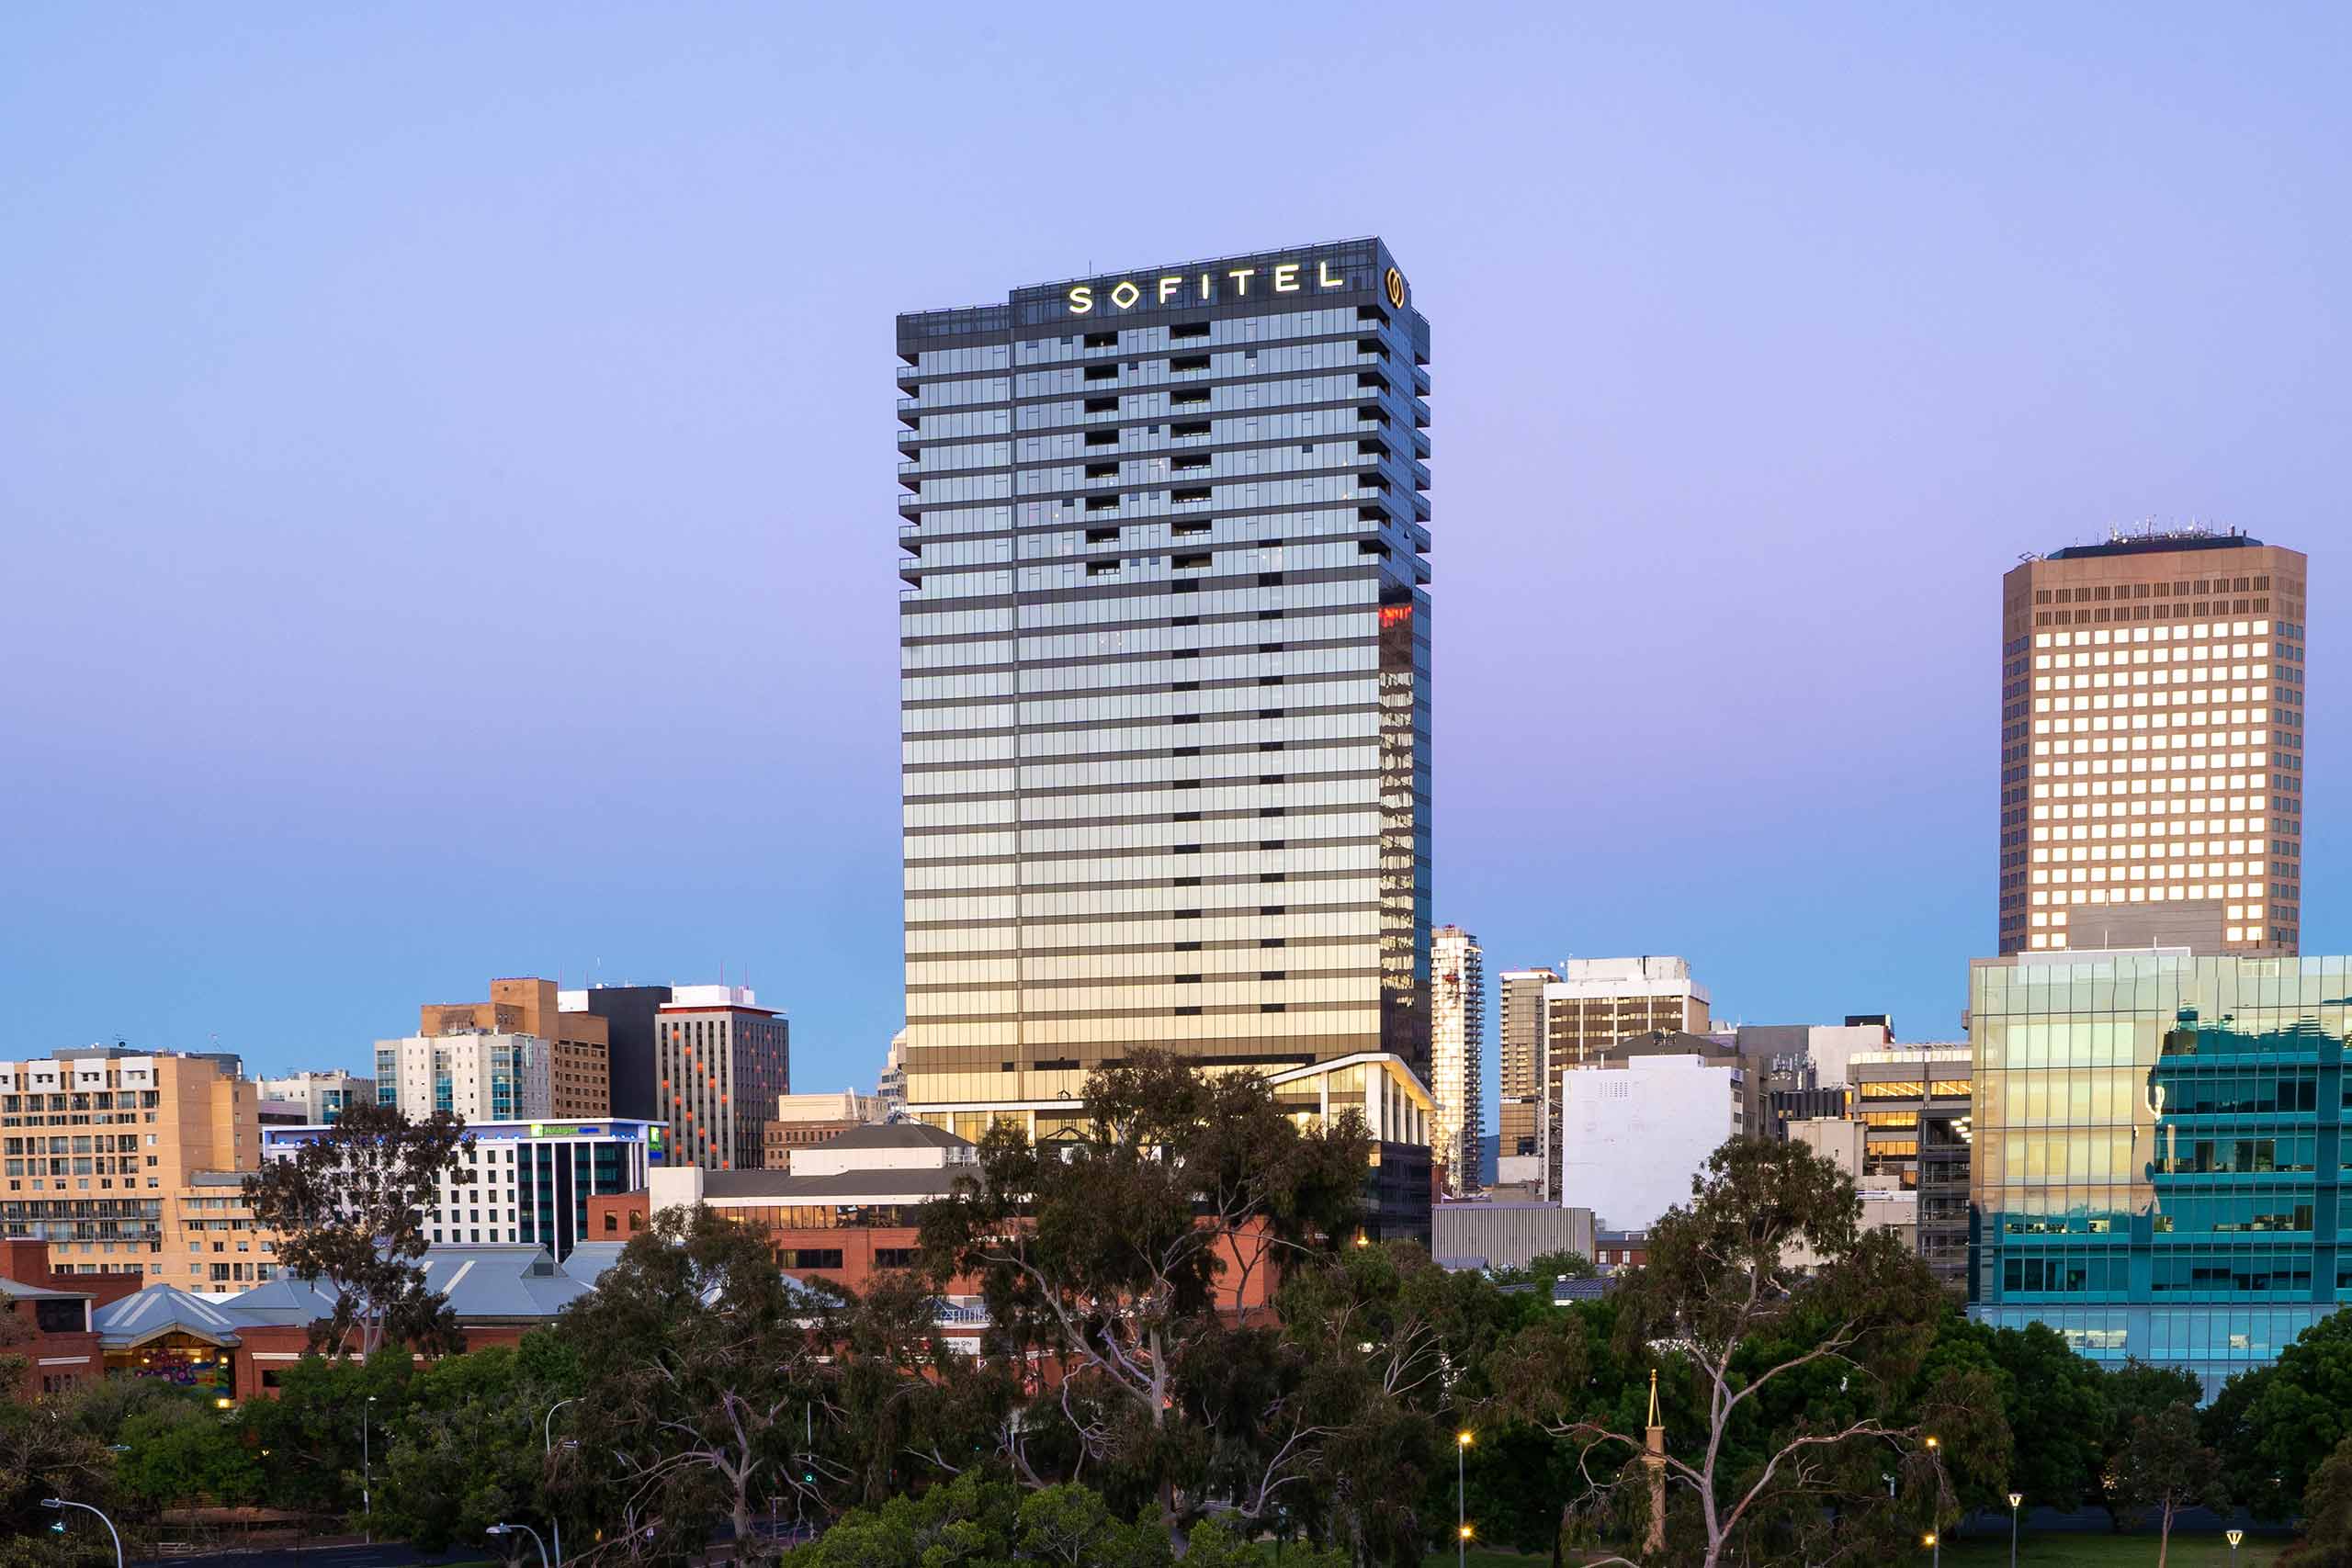 External view of Sofitel Adelaide hotel, South Australia